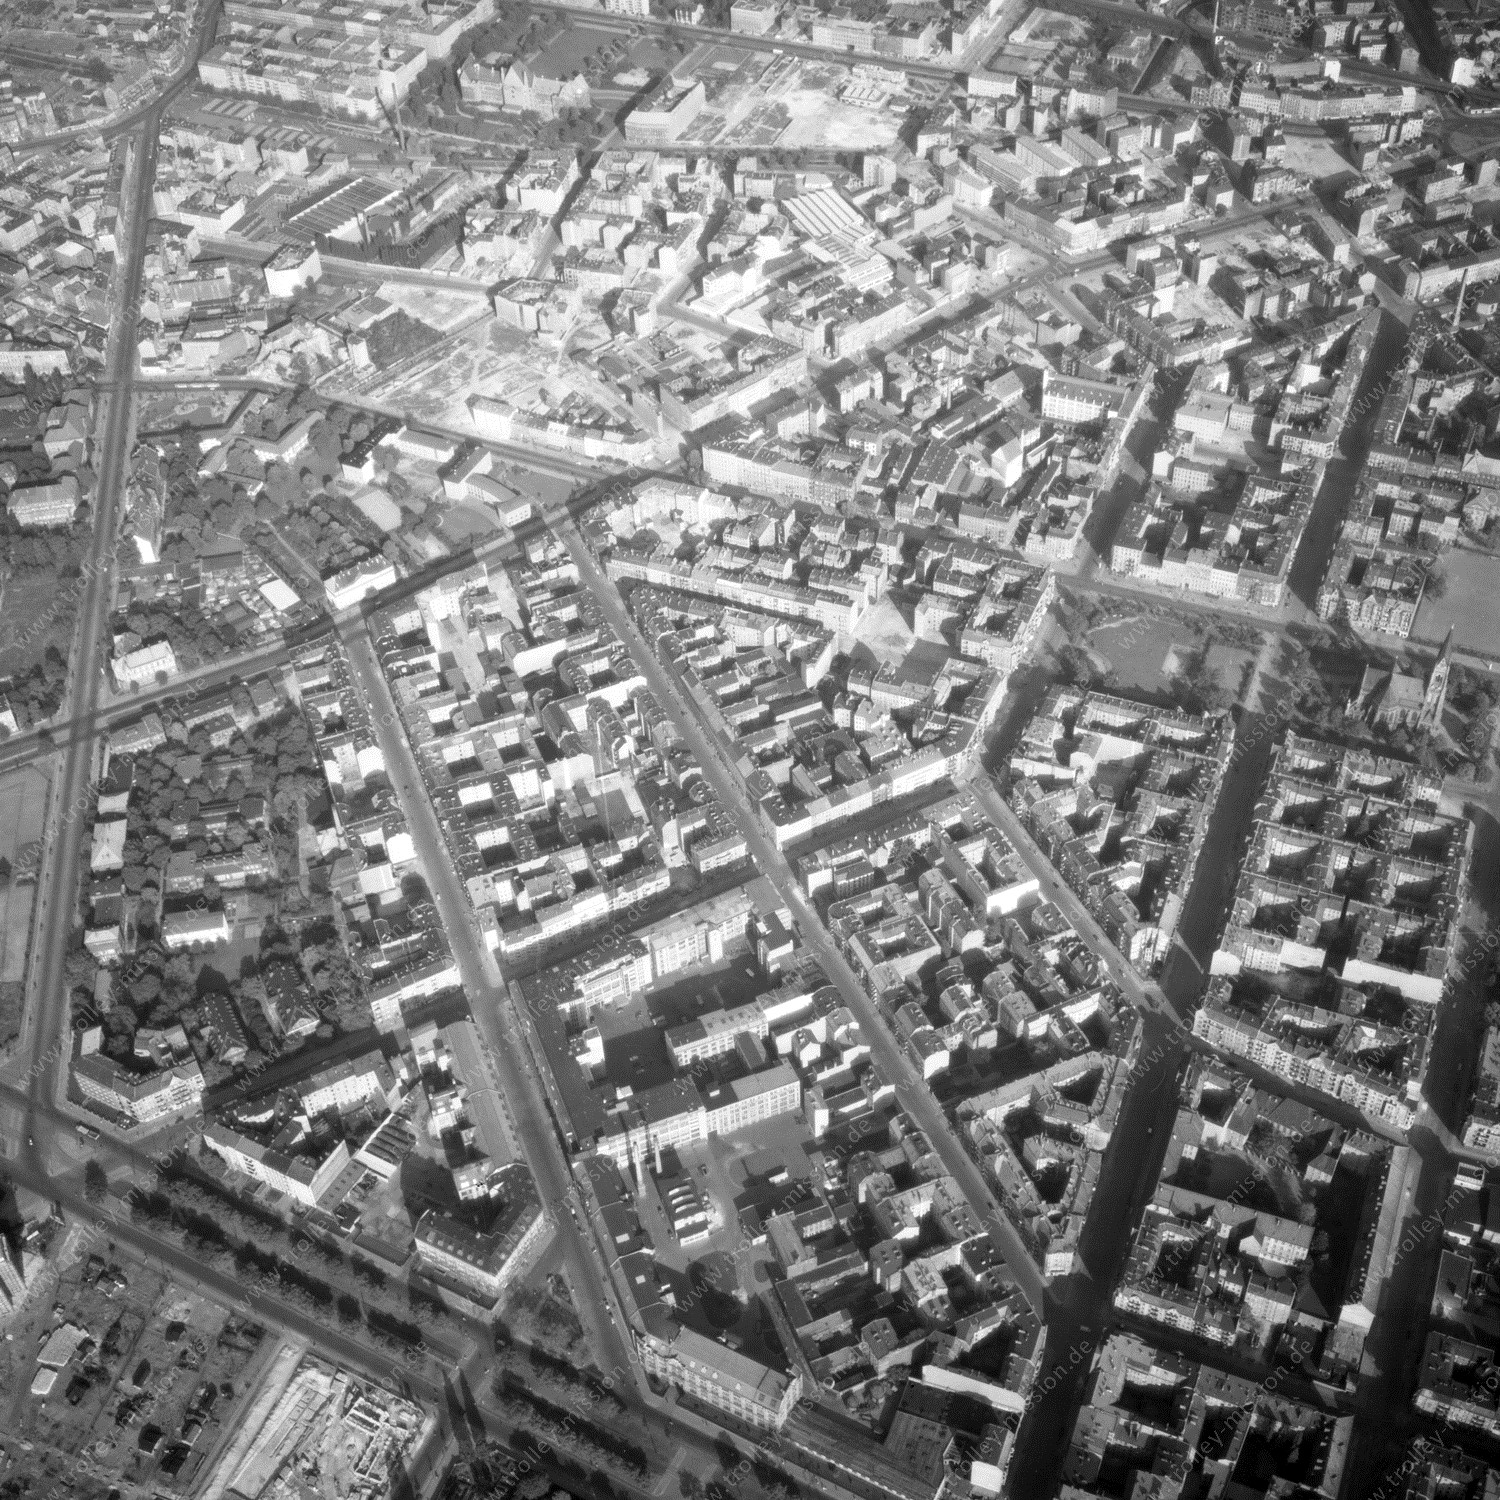 Alte Fotos und Luftbilder von Berlin - Luftbildaufnahme Nr. 12 - Historische Luftaufnahmen von West-Berlin aus dem Jahr 1954 - Flugstrecke Papa